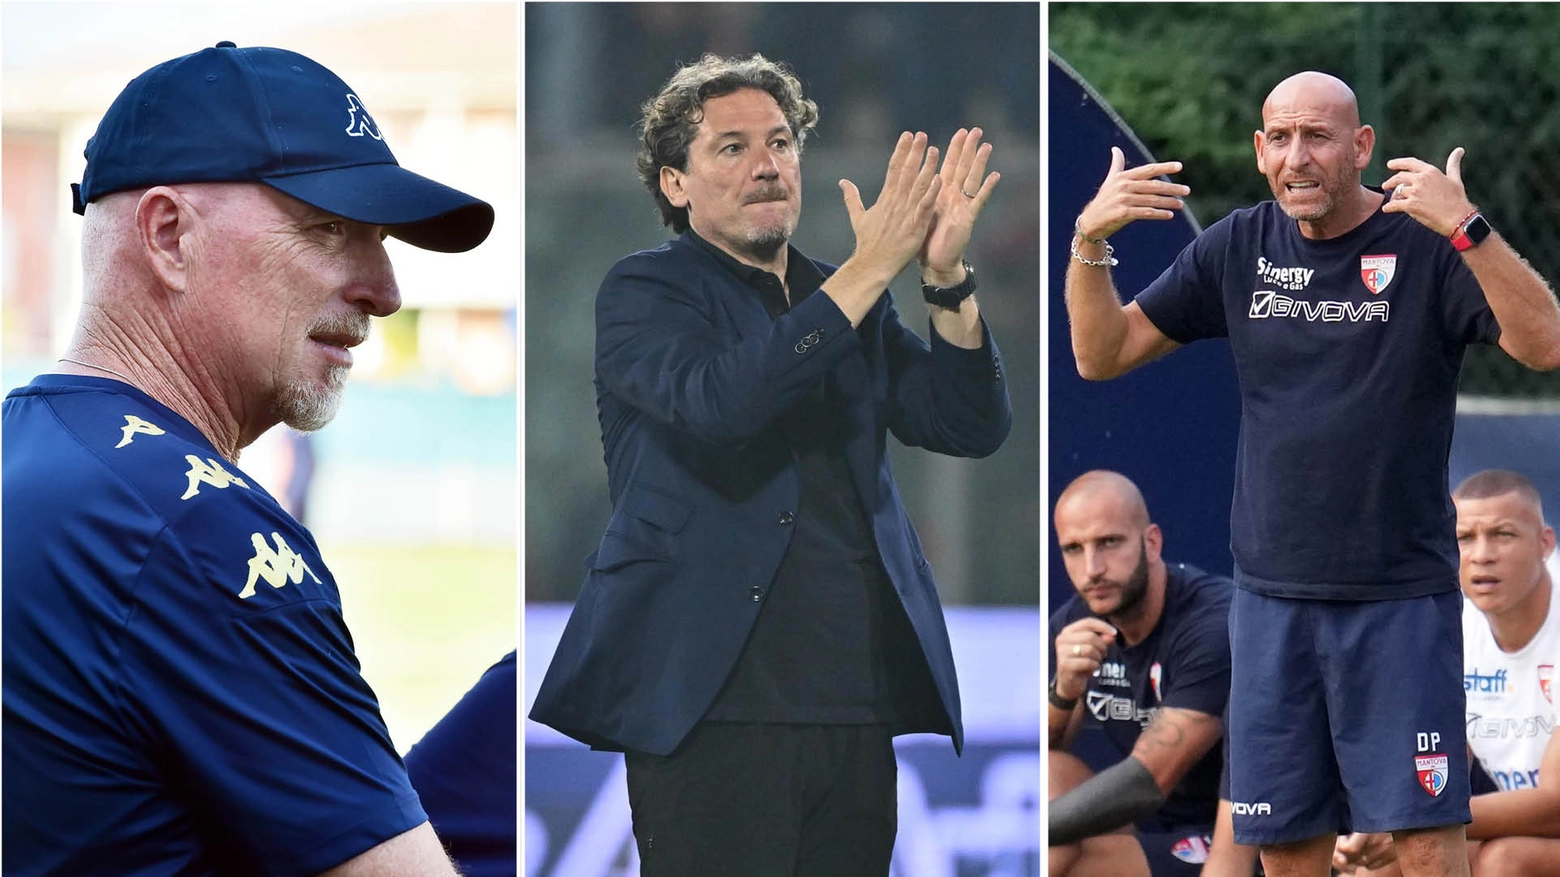 Le lombarde che saranno impegnate in Serie B stanno programmando la nuova stagione con la speranza che possa essere ricca di soddisfazioni